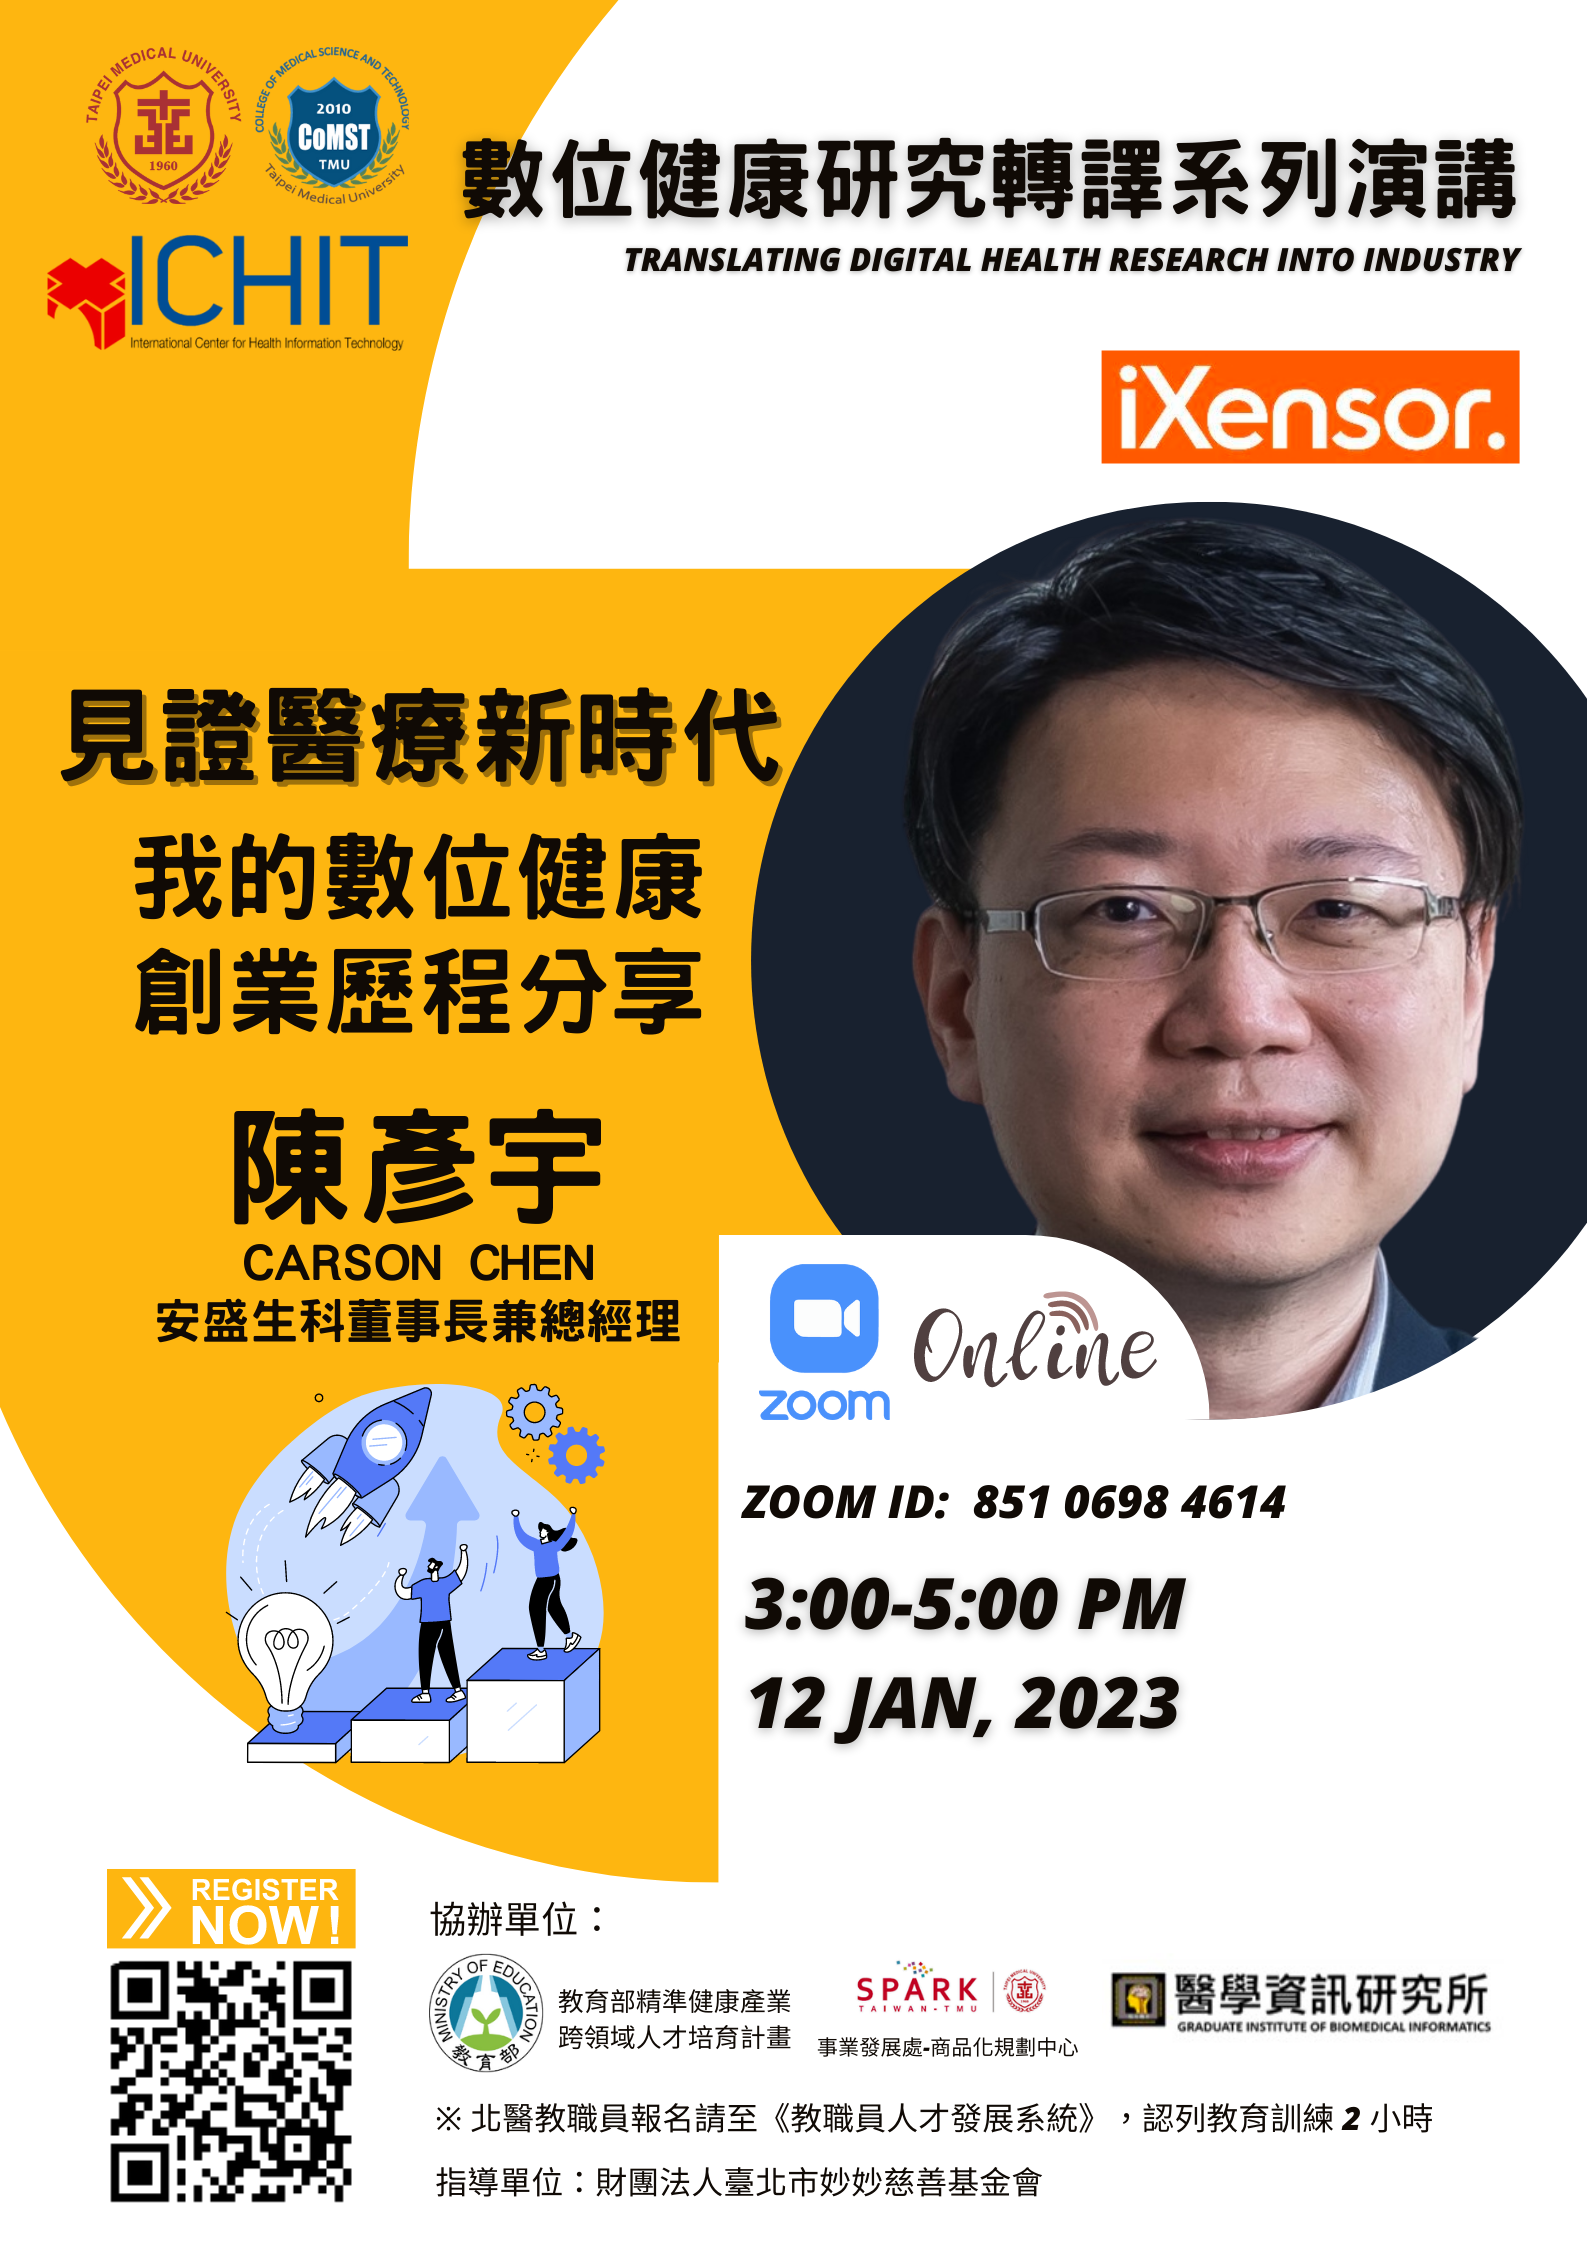 智慧行動醫療科技的先驅 安盛生科IXensor 陳彥宇(Carson Chen) 董事長兼總經理 分享講題「見證醫療新時代：我的數位健康創業歷程分享」。